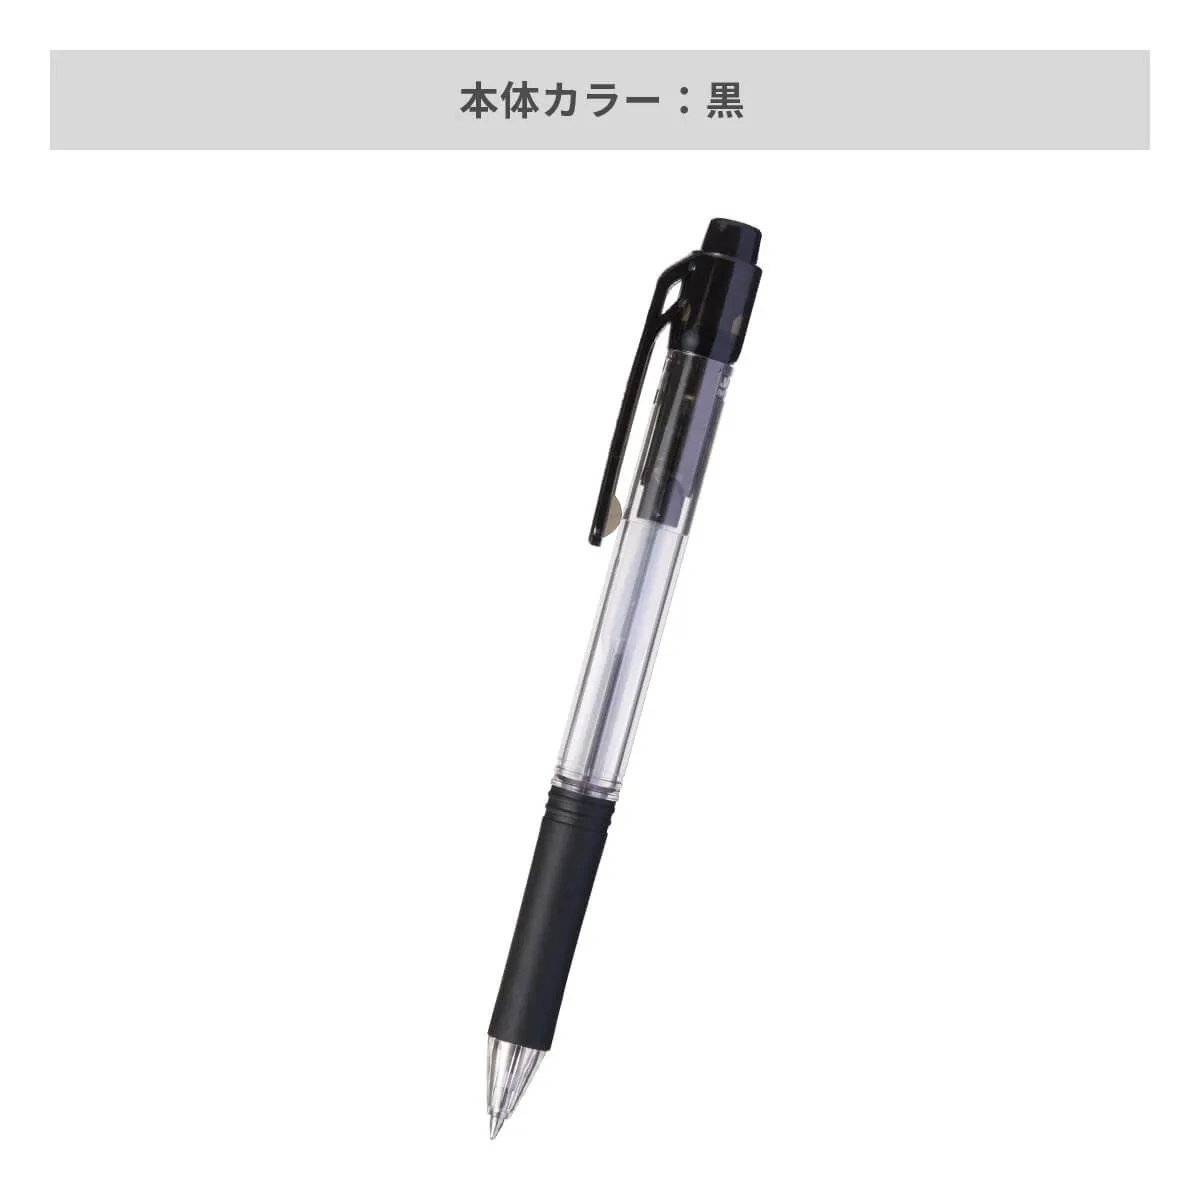 ぺんてる ドット・イーボールペン 0.7mm【名入れボールペン / パッド印刷】 画像4